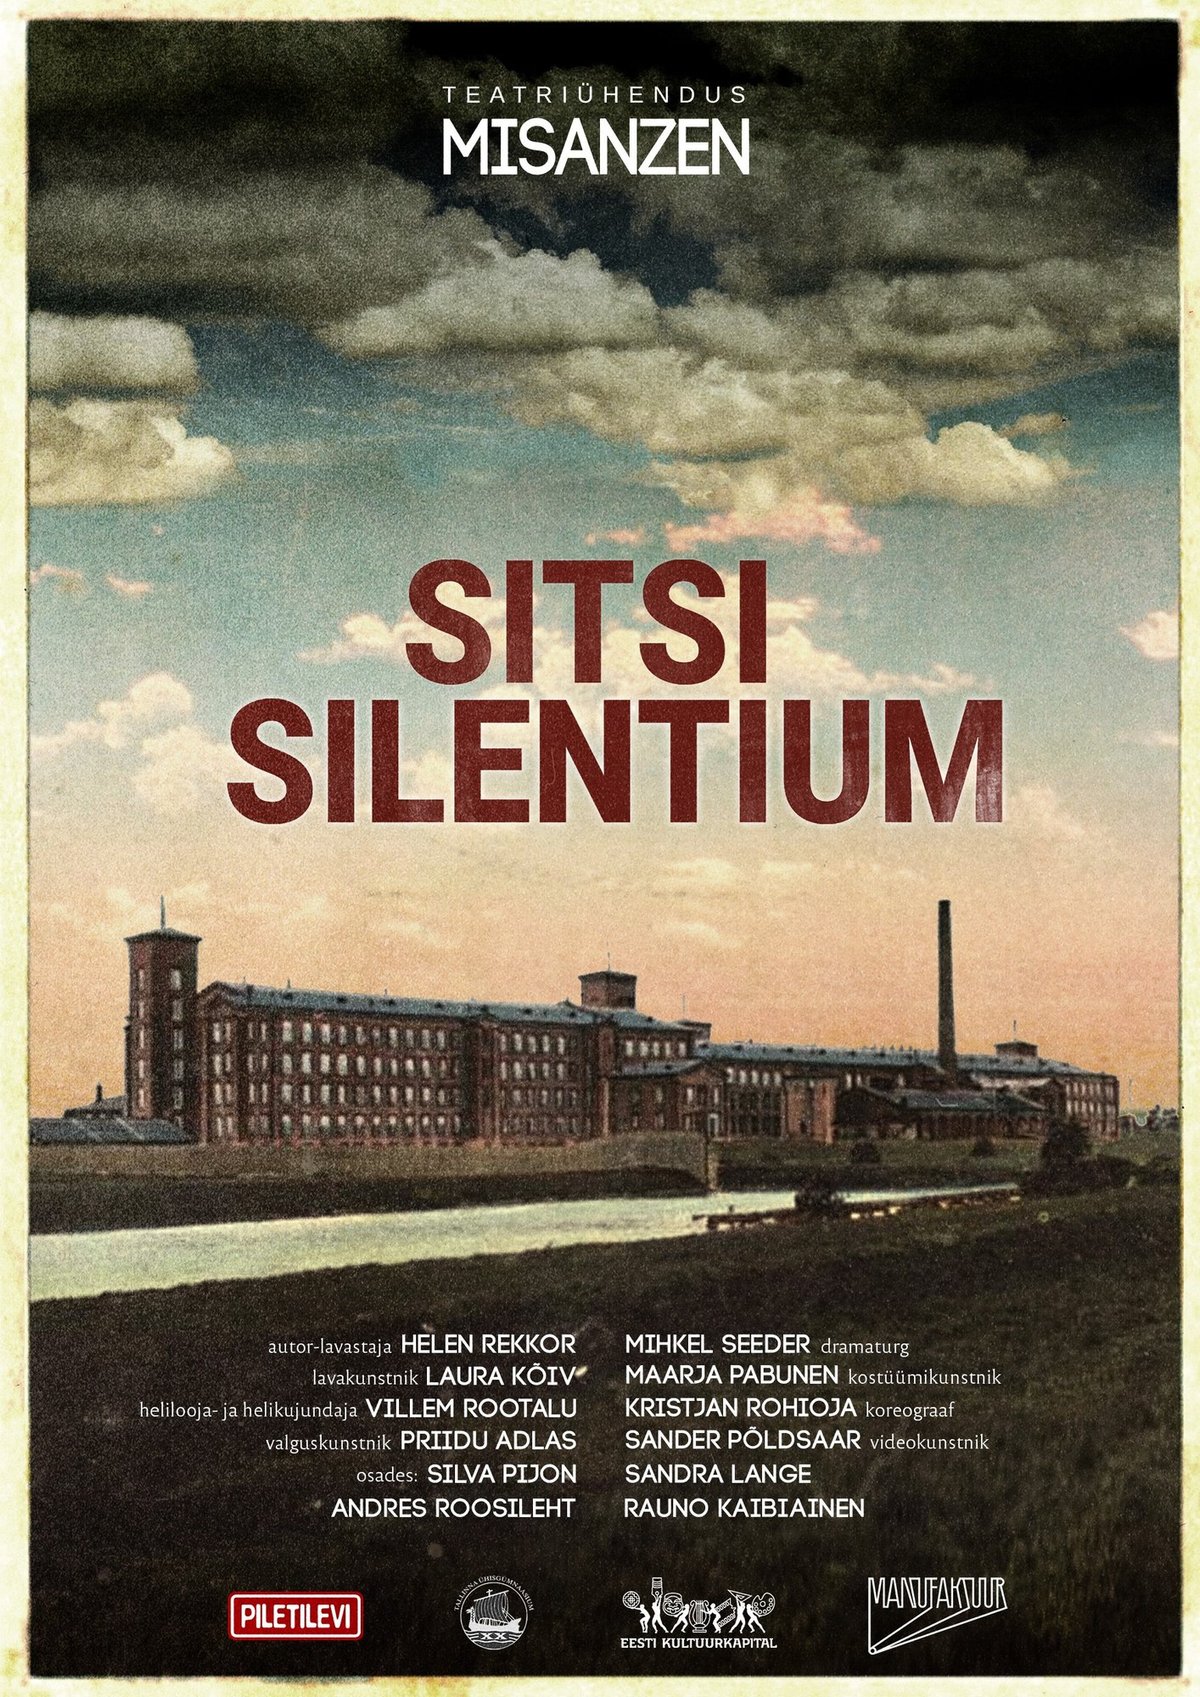 "Sitsi Silentium".